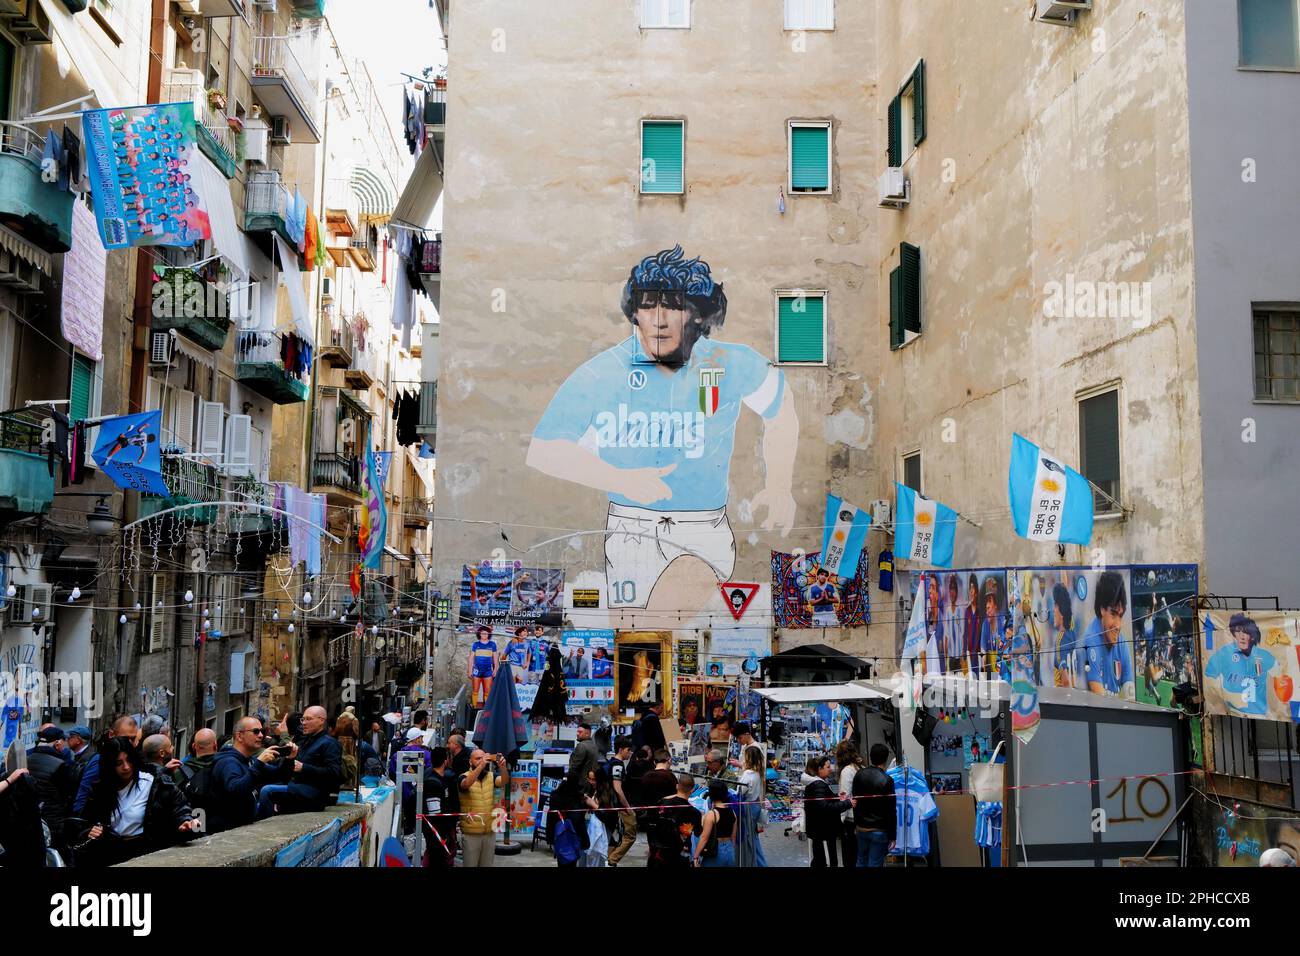 Il murale di Diego Armando Maradona creato da Mario Filardi nel quartiere dei quartieri Spagnoli si trova a Napoli (Italia), 22nd marzo 2023. Foto CES Foto Stock